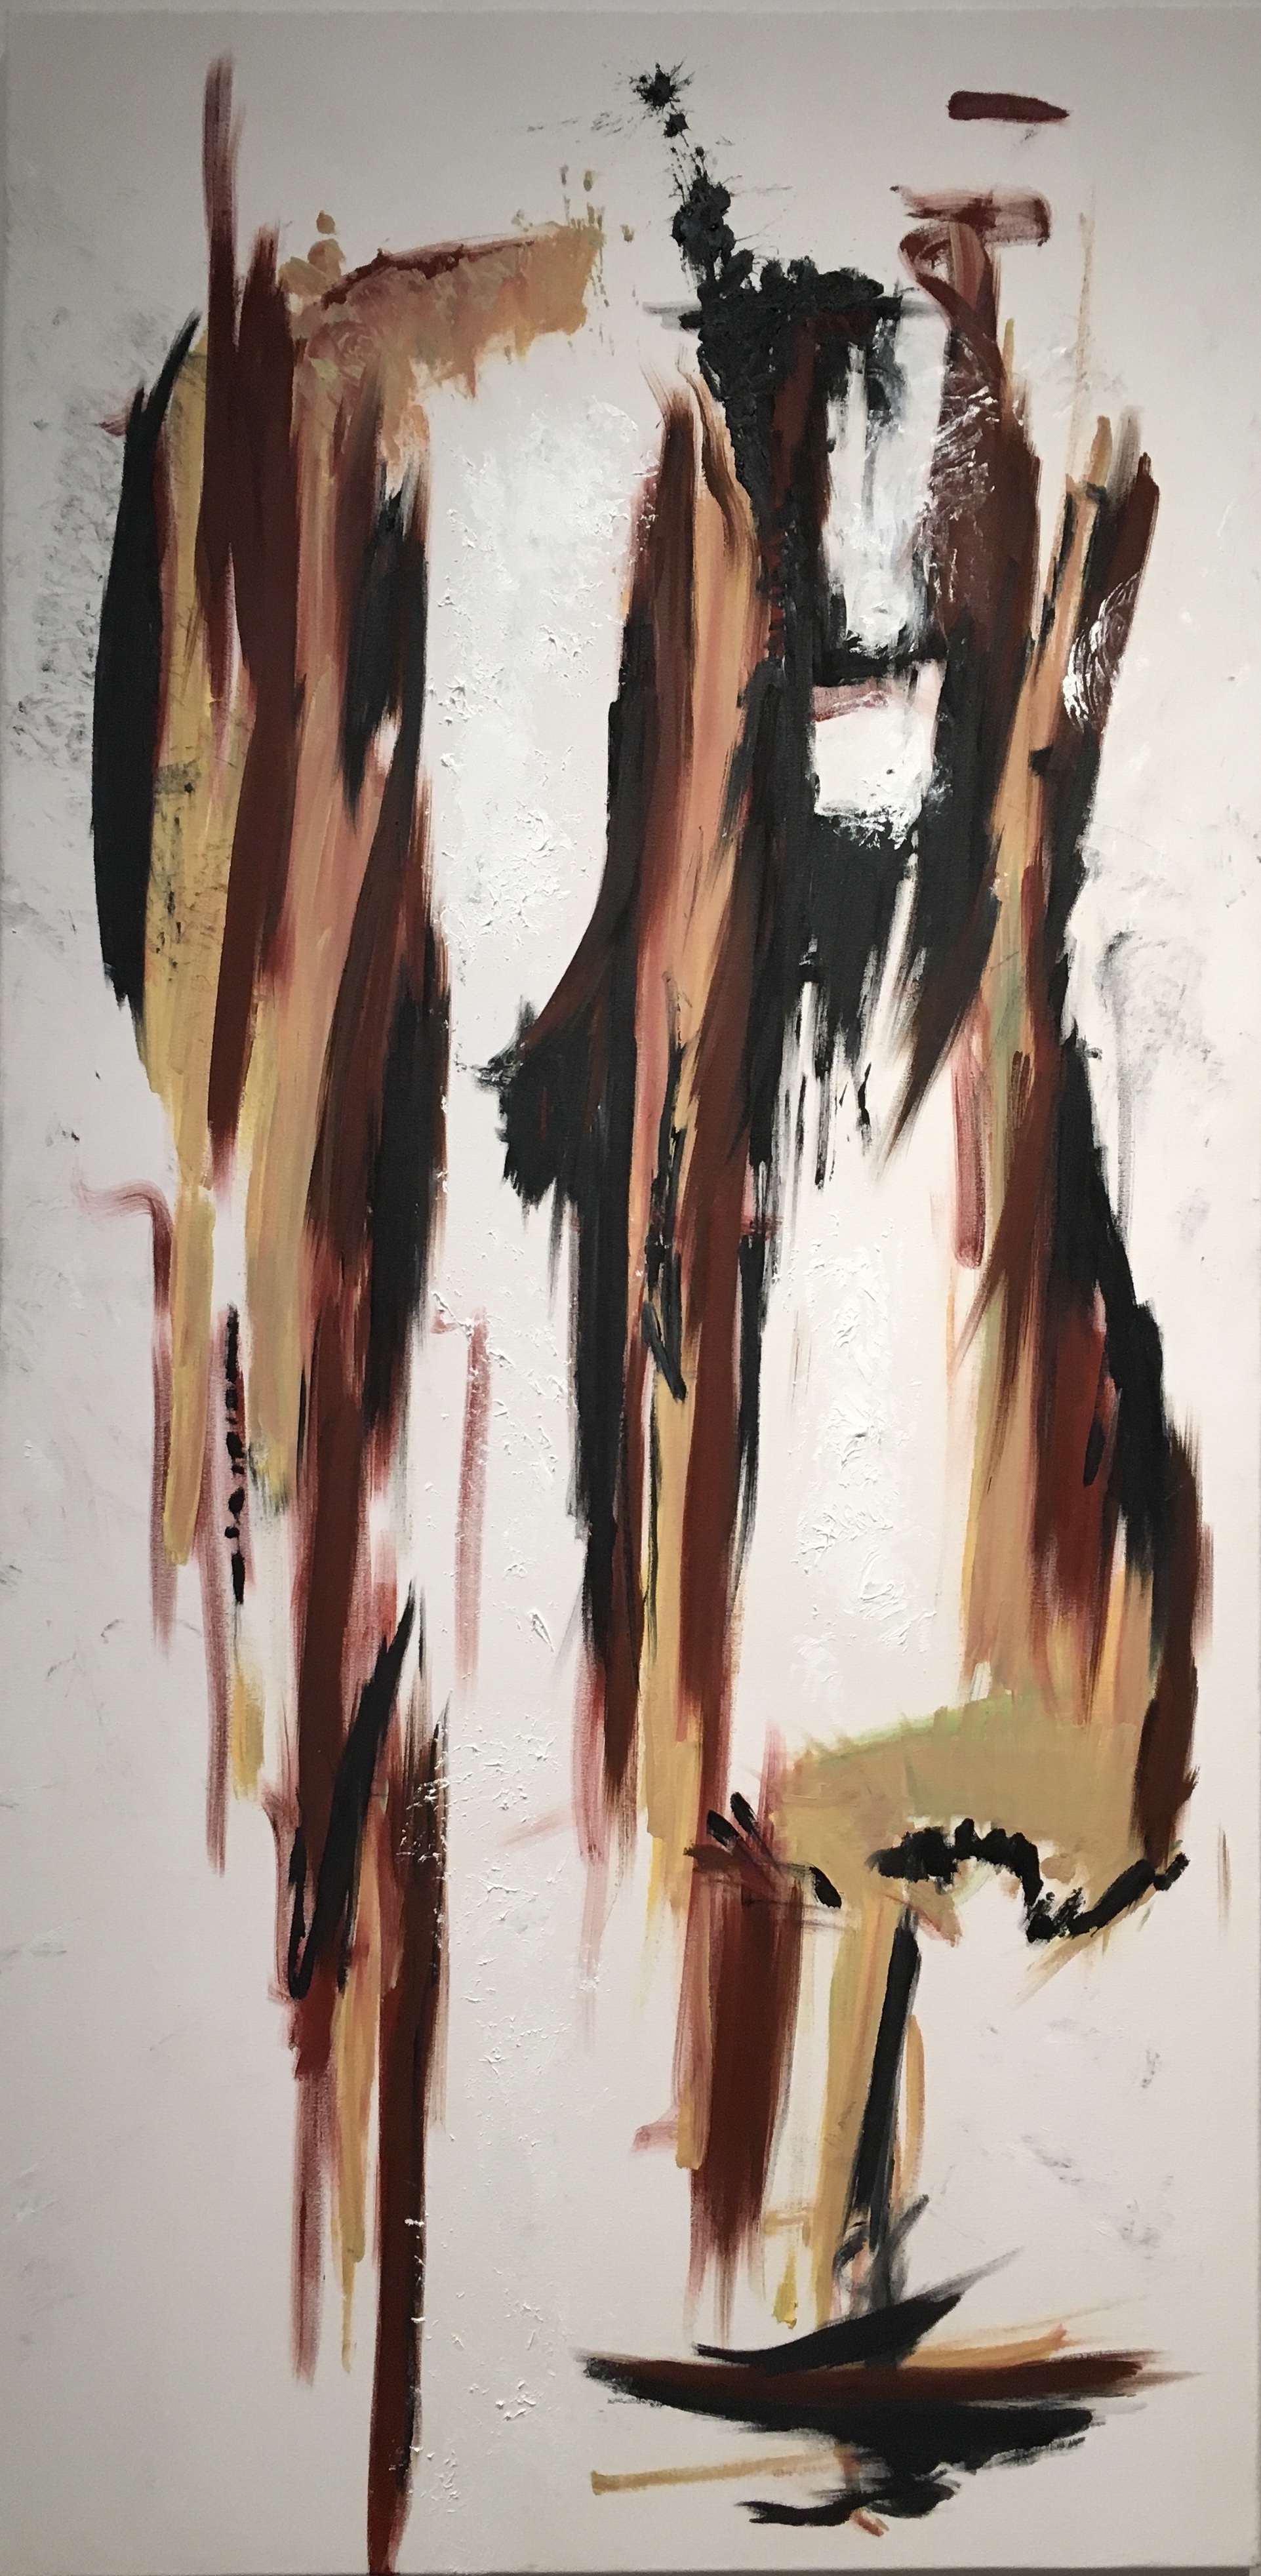   Still    Oil on primed canvas    72" x 36"    2018  